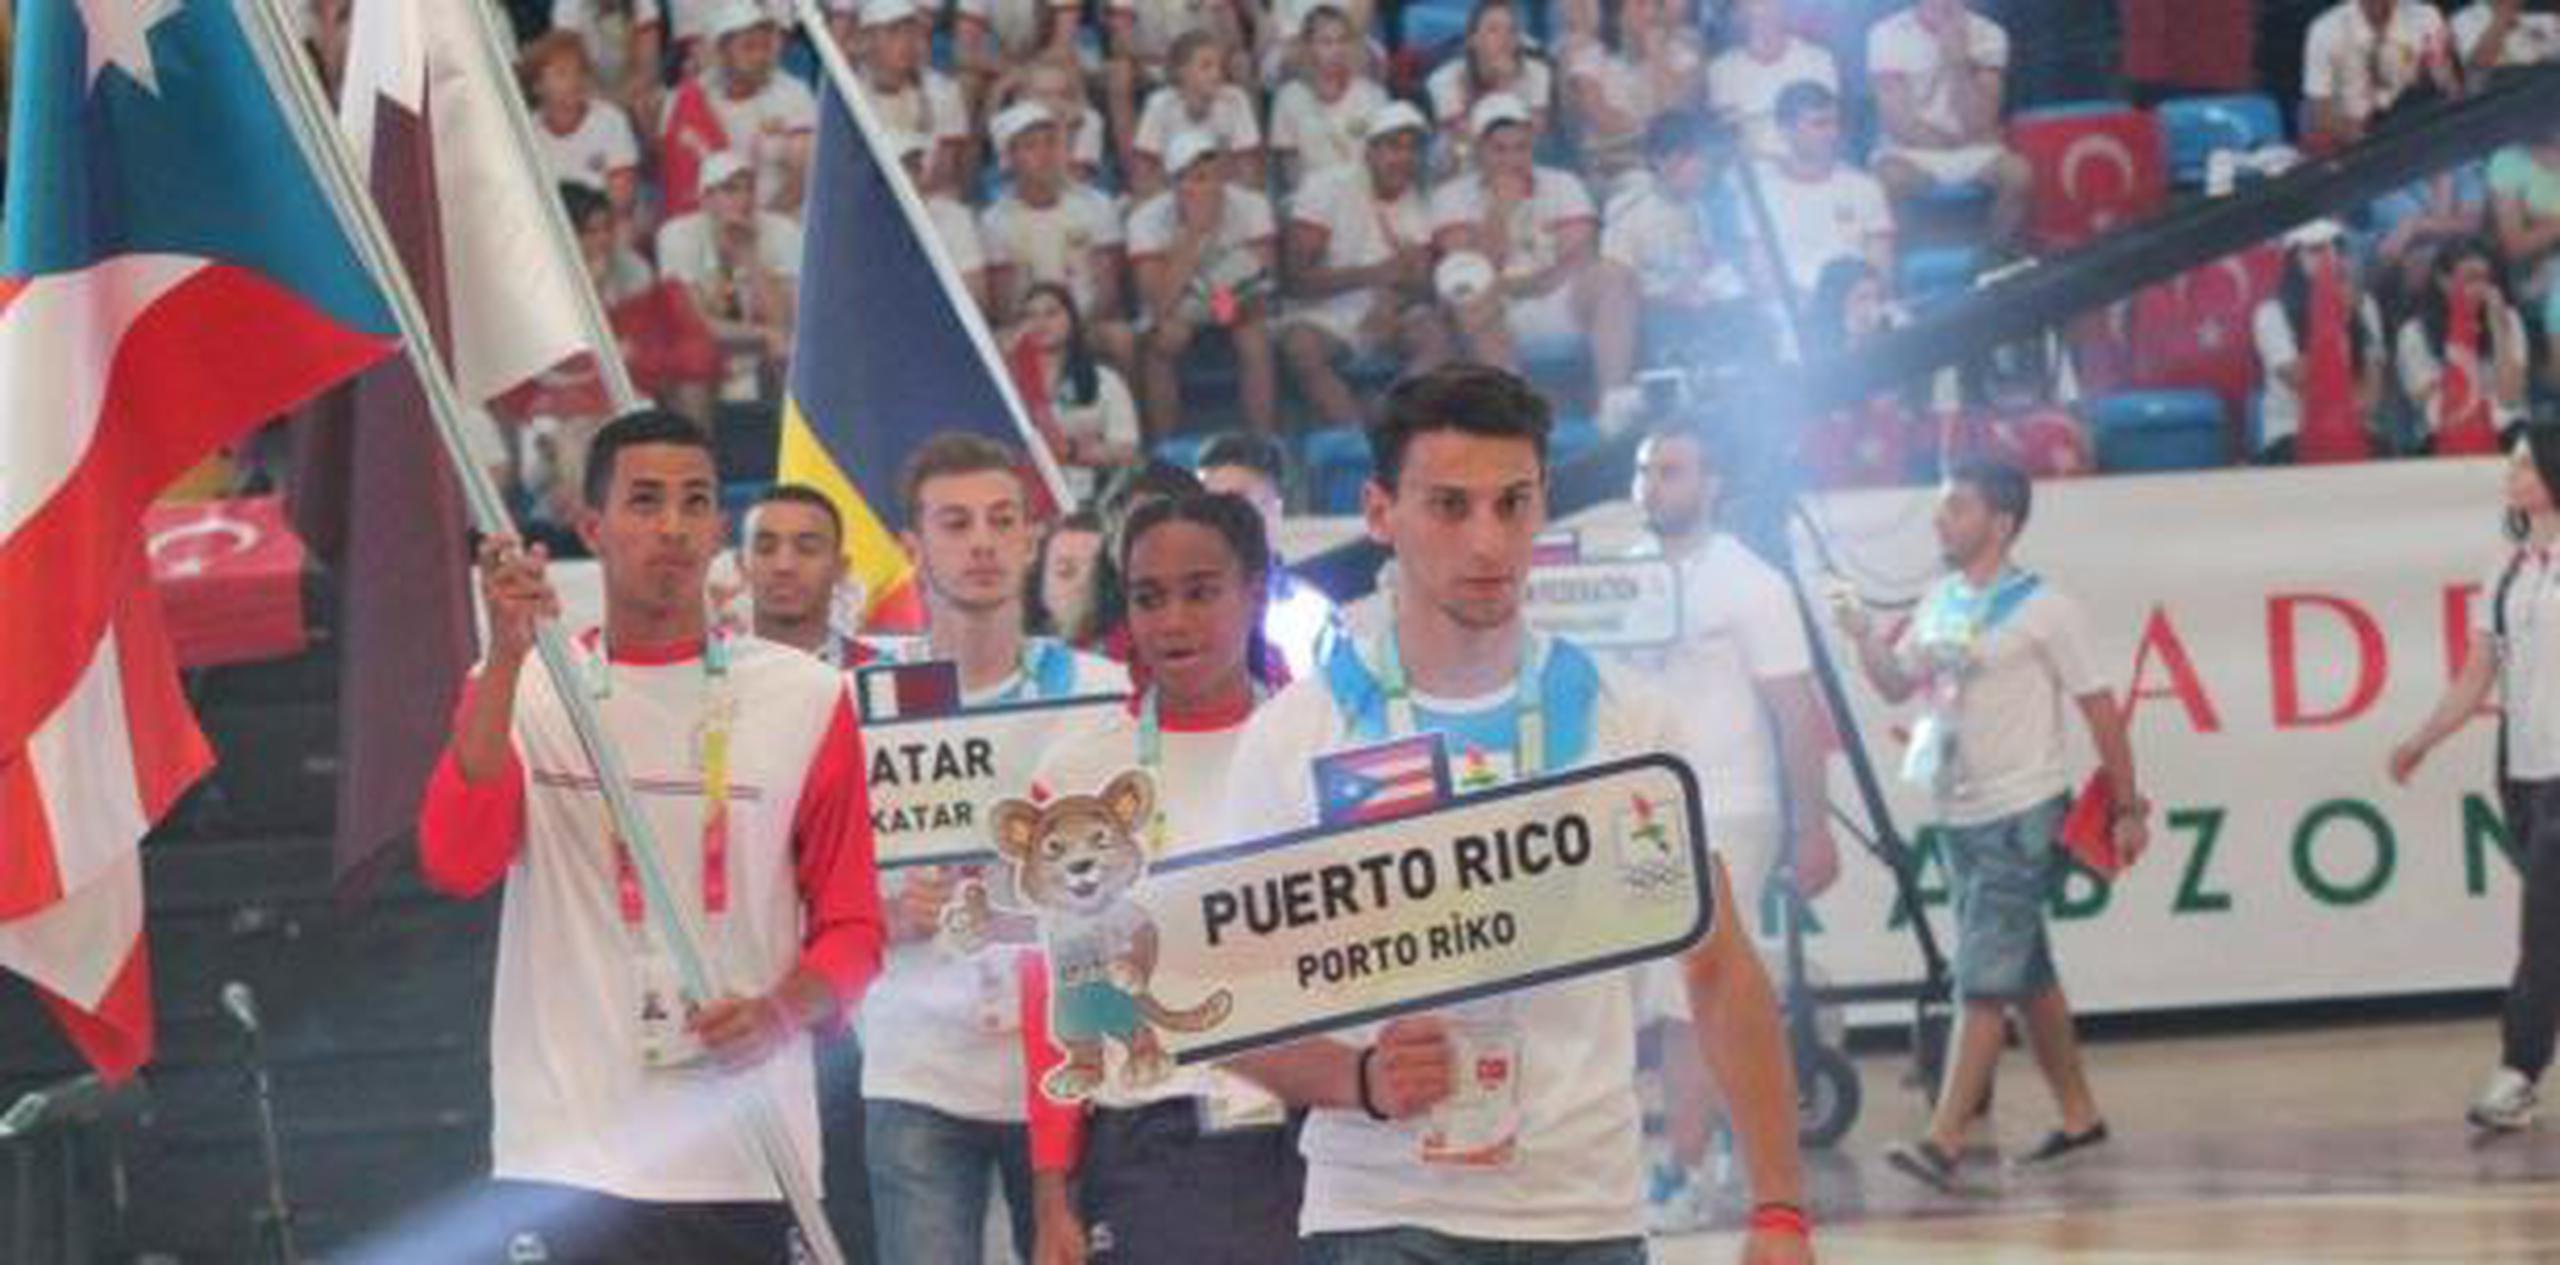 Los jóvenes están en el país participando en la competencia de la Federación Internacional de Deporte Escolar. (Facebook)